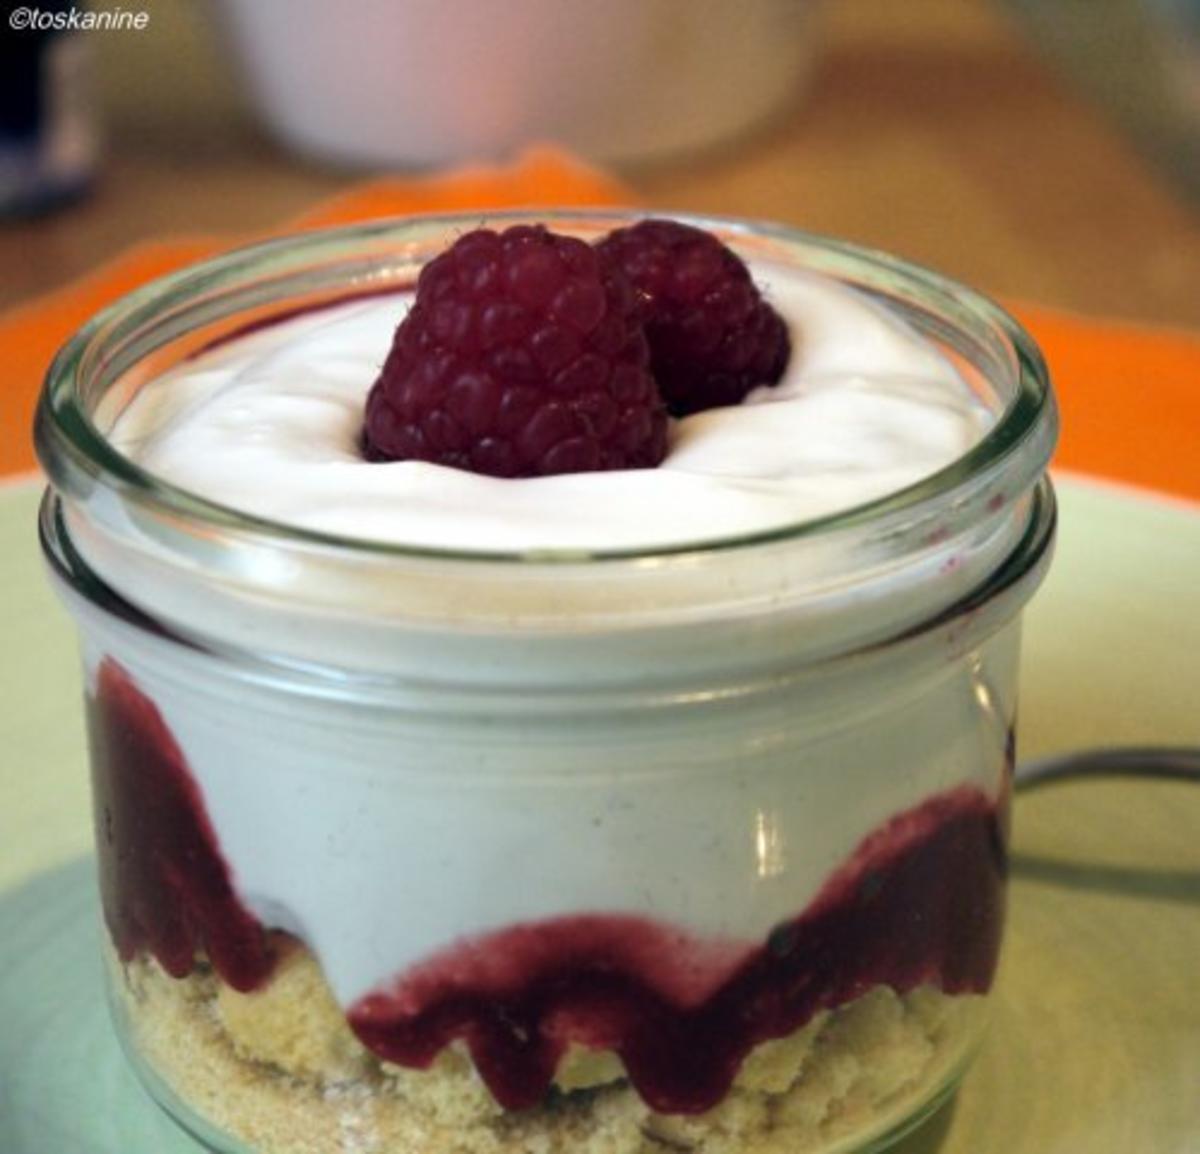 Veilchen-Joghurt auf beschwipsten Himbeeren - Rezept Von Einsendungen
toskanine